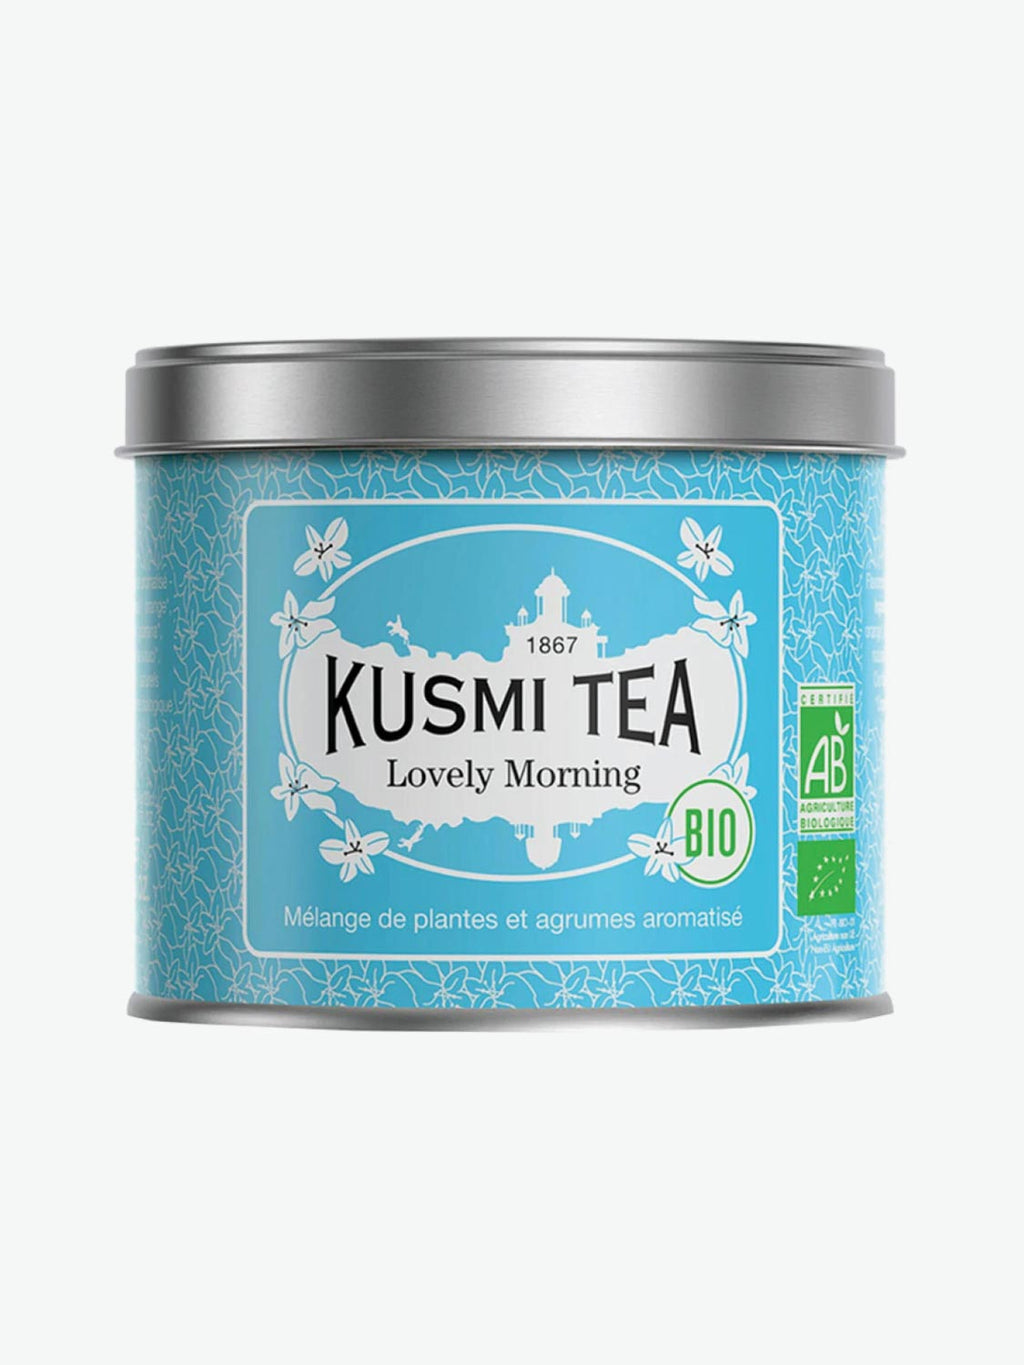 Kusmi Lovely Morning Green Tea | A